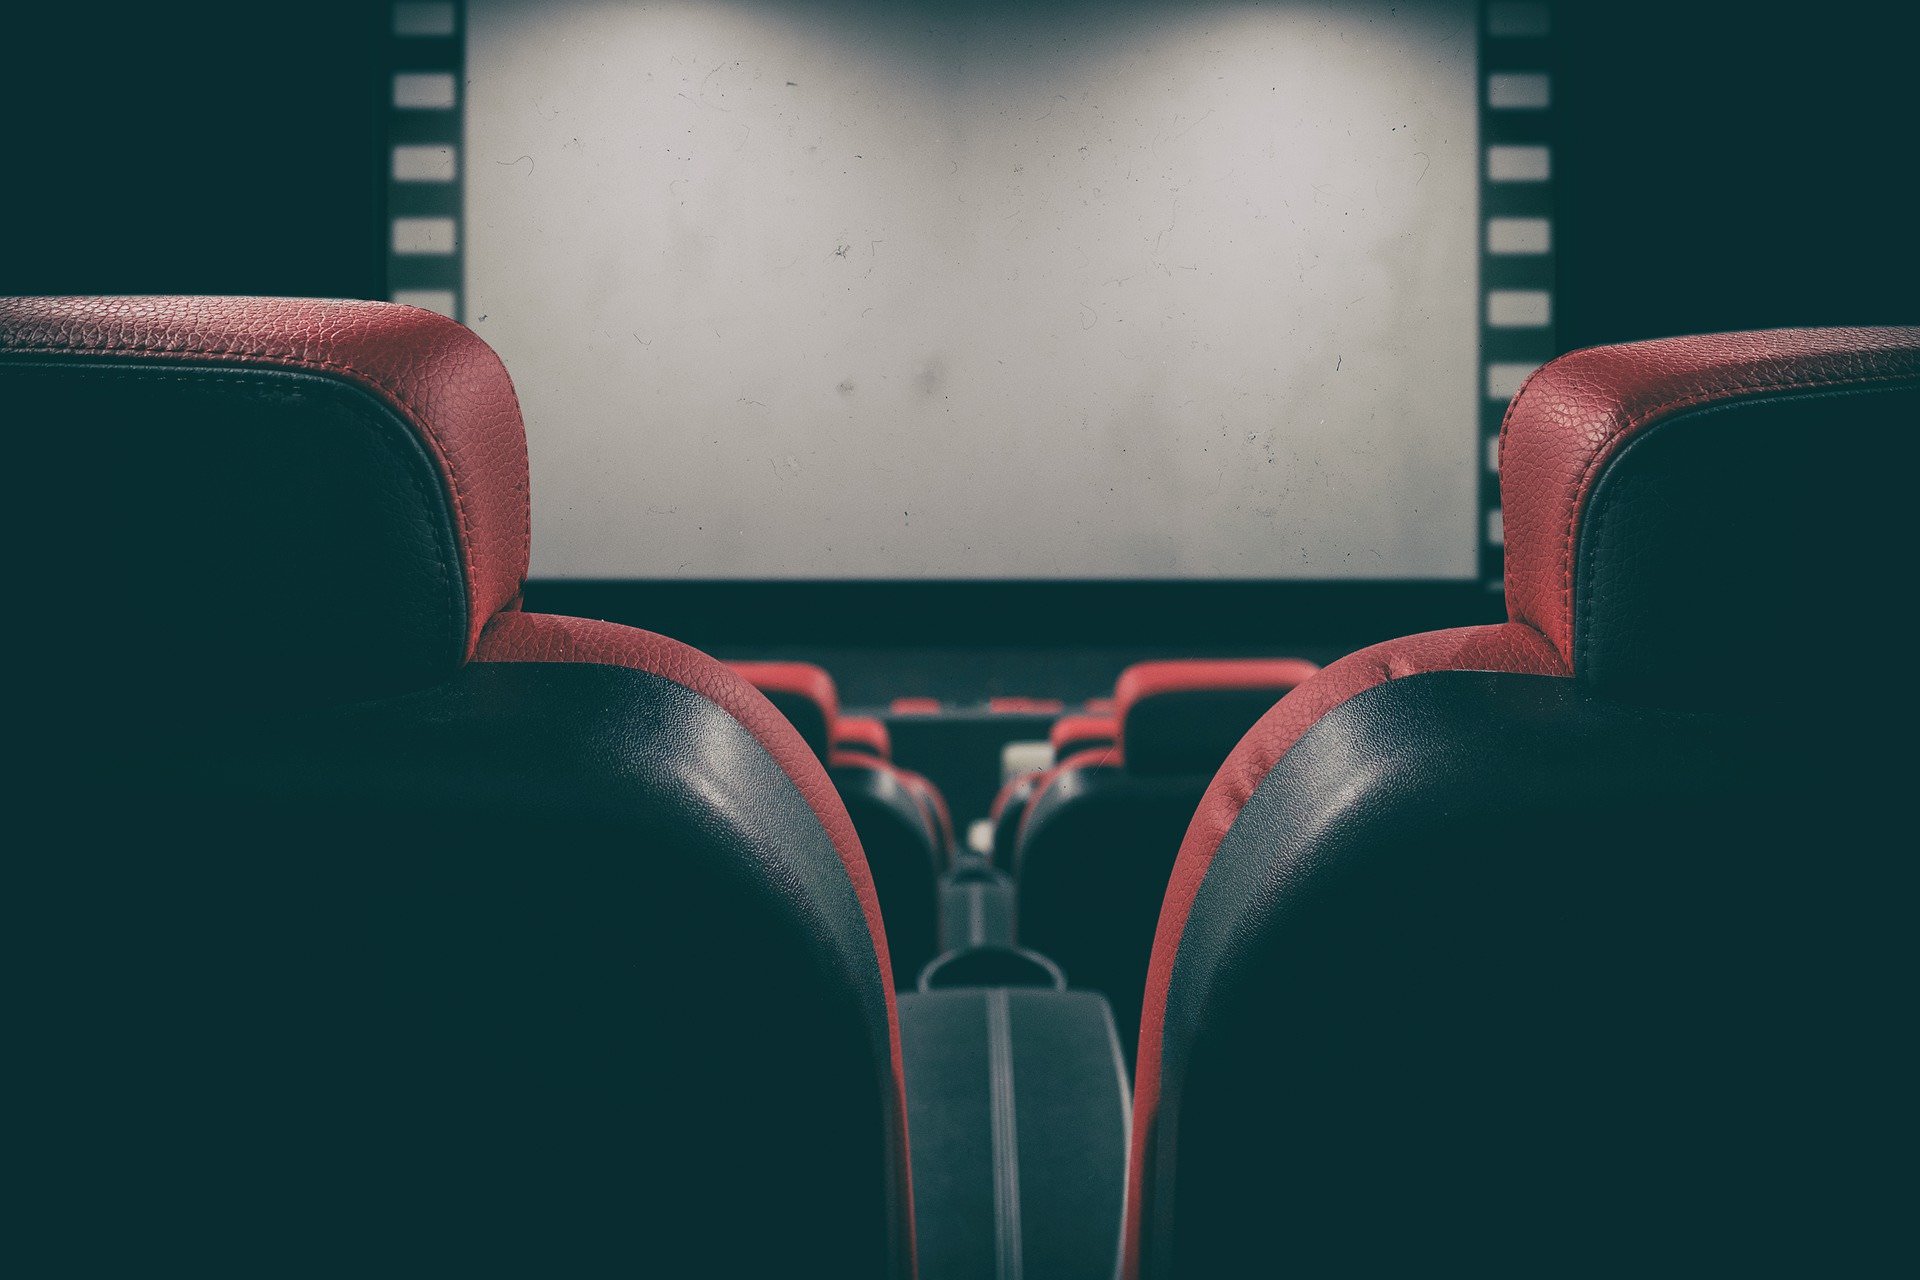 Fundos Europeus: cinemas enquanto polos de inovação para comunidades locais